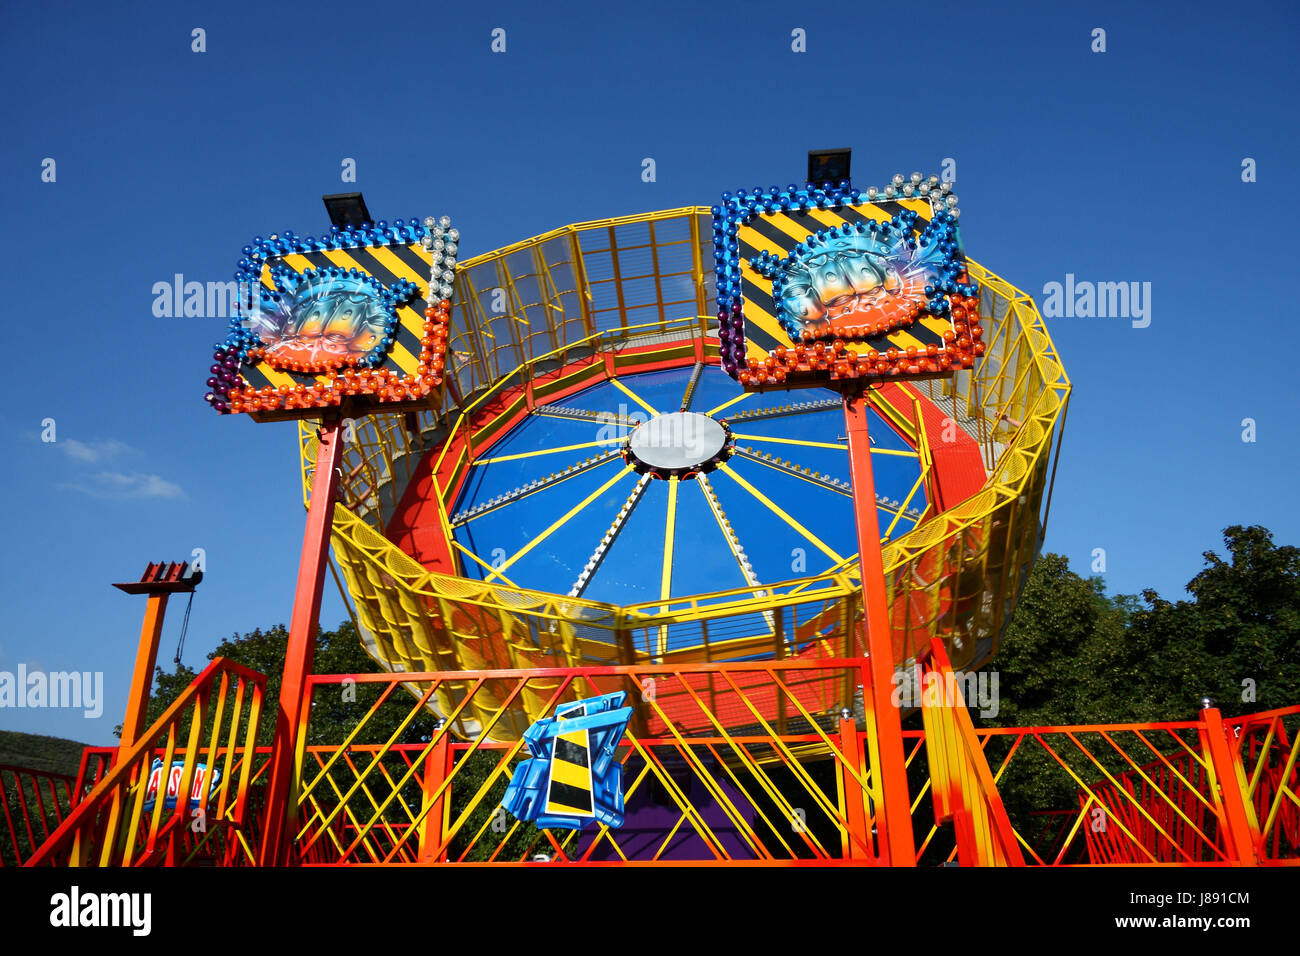 parish fair, ferris wheel, showman, centrifugal force, box, blue, motion, Stock Photo